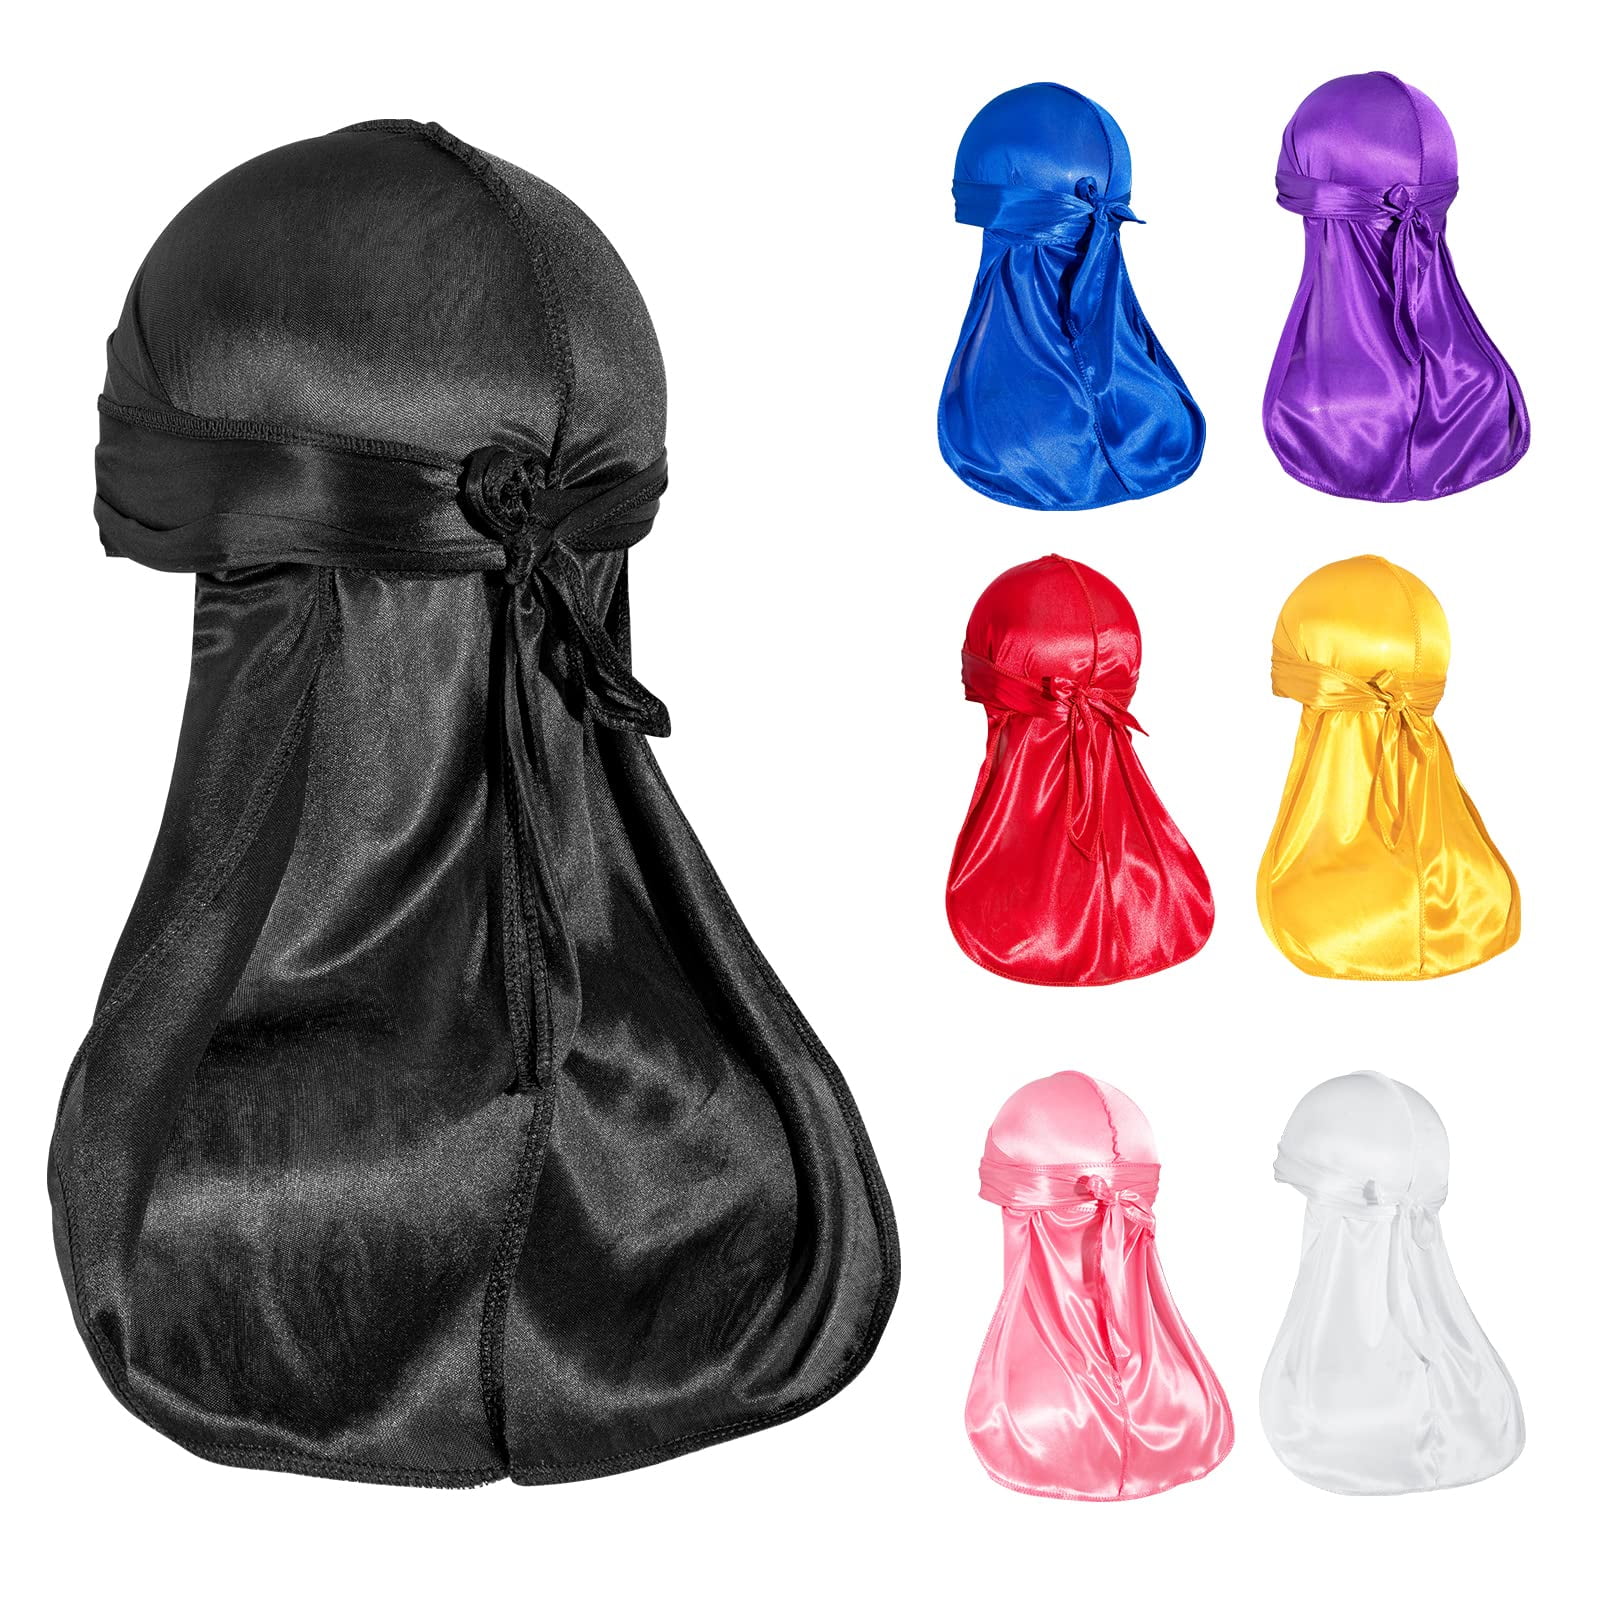 Designer Bonnets Durags Masks on